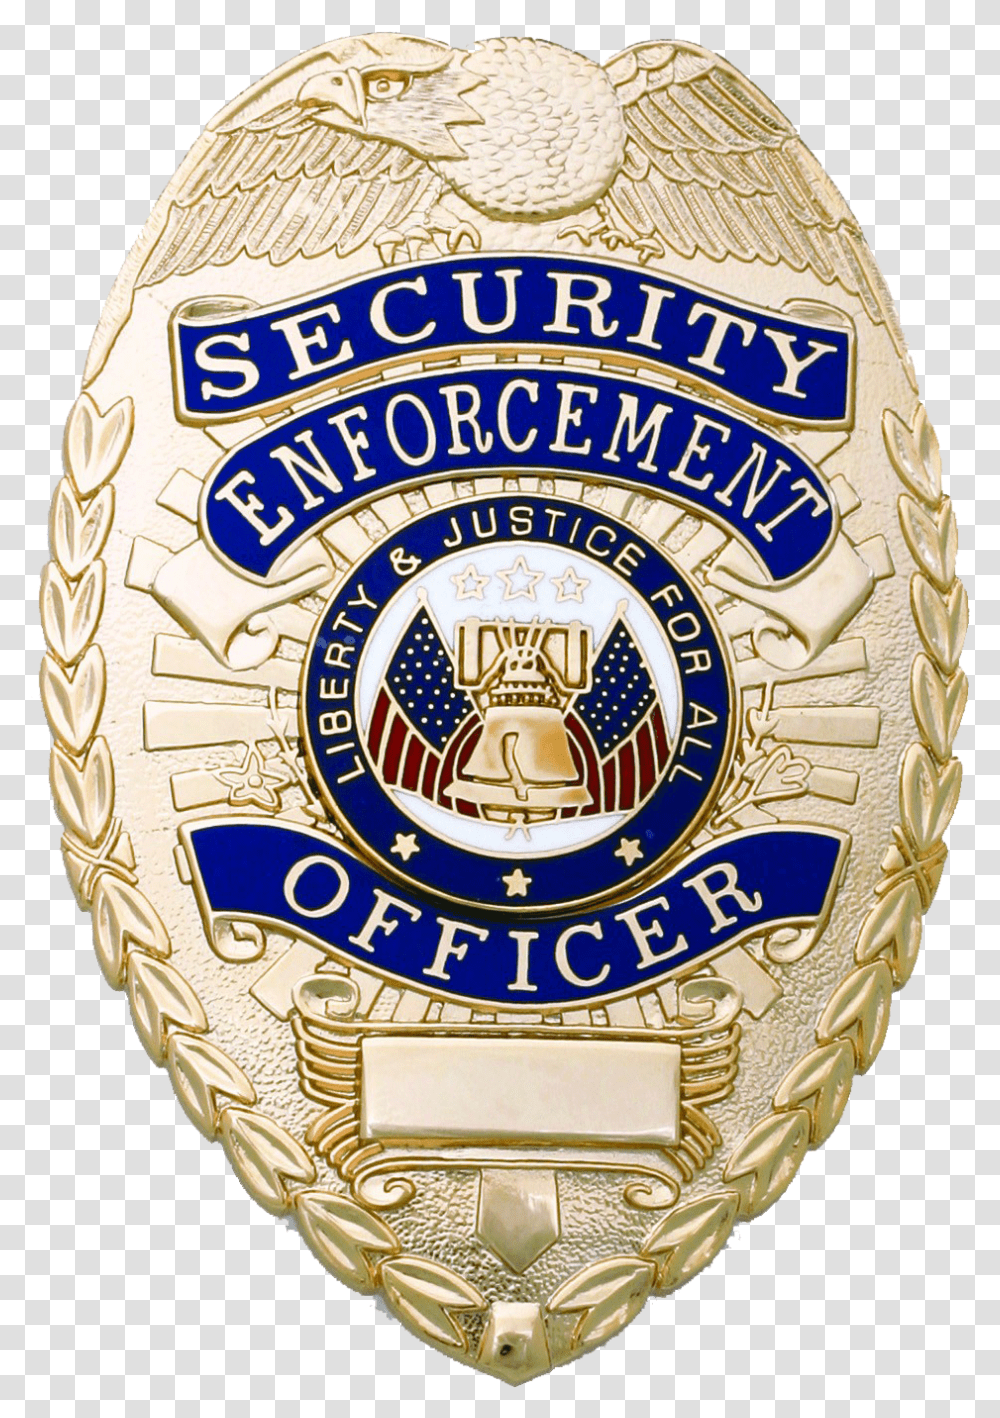 Badge Holder With Belt Clip Security Enforcement Officer Badge, Logo, Trademark, Emblem Transparent Png